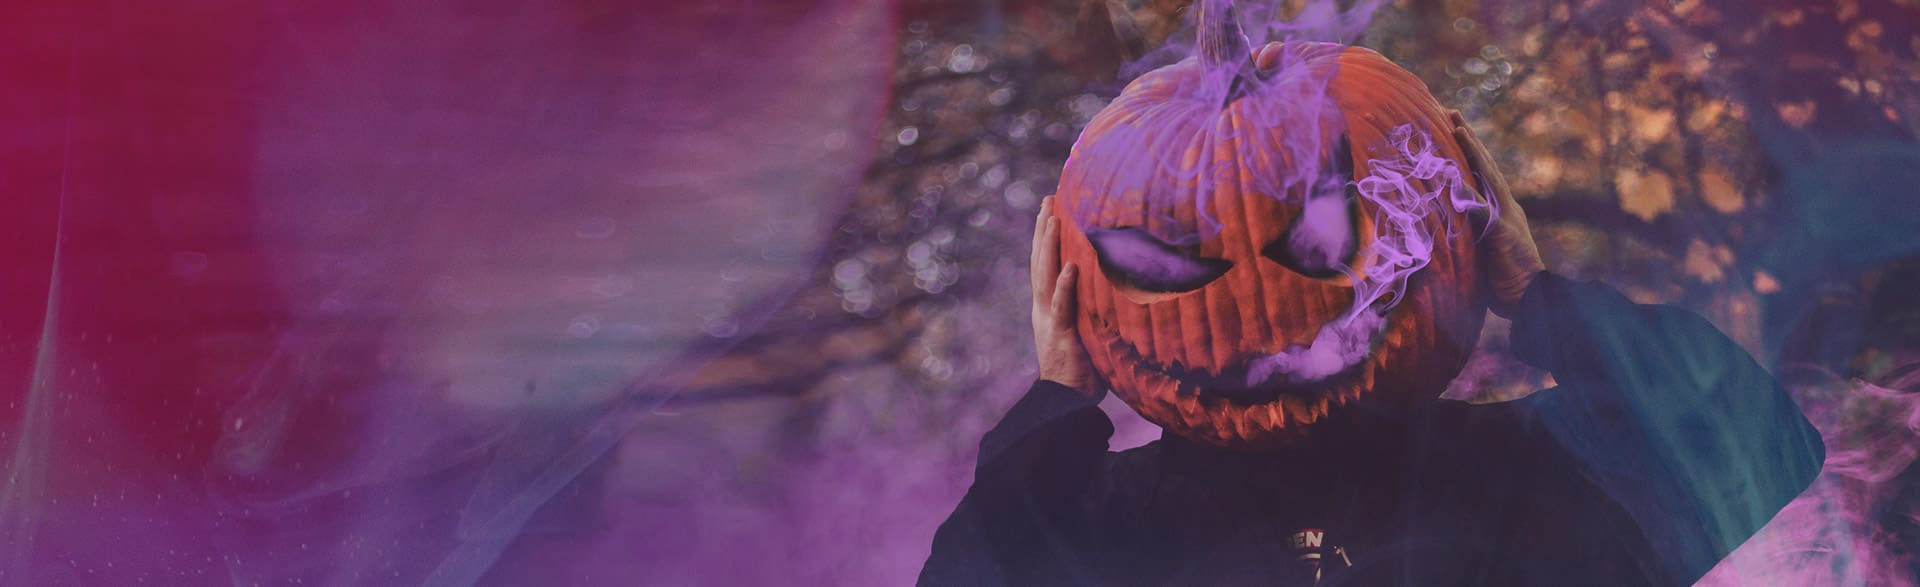 Playlist esto es halloween: imagen de una calabaza con humo morado